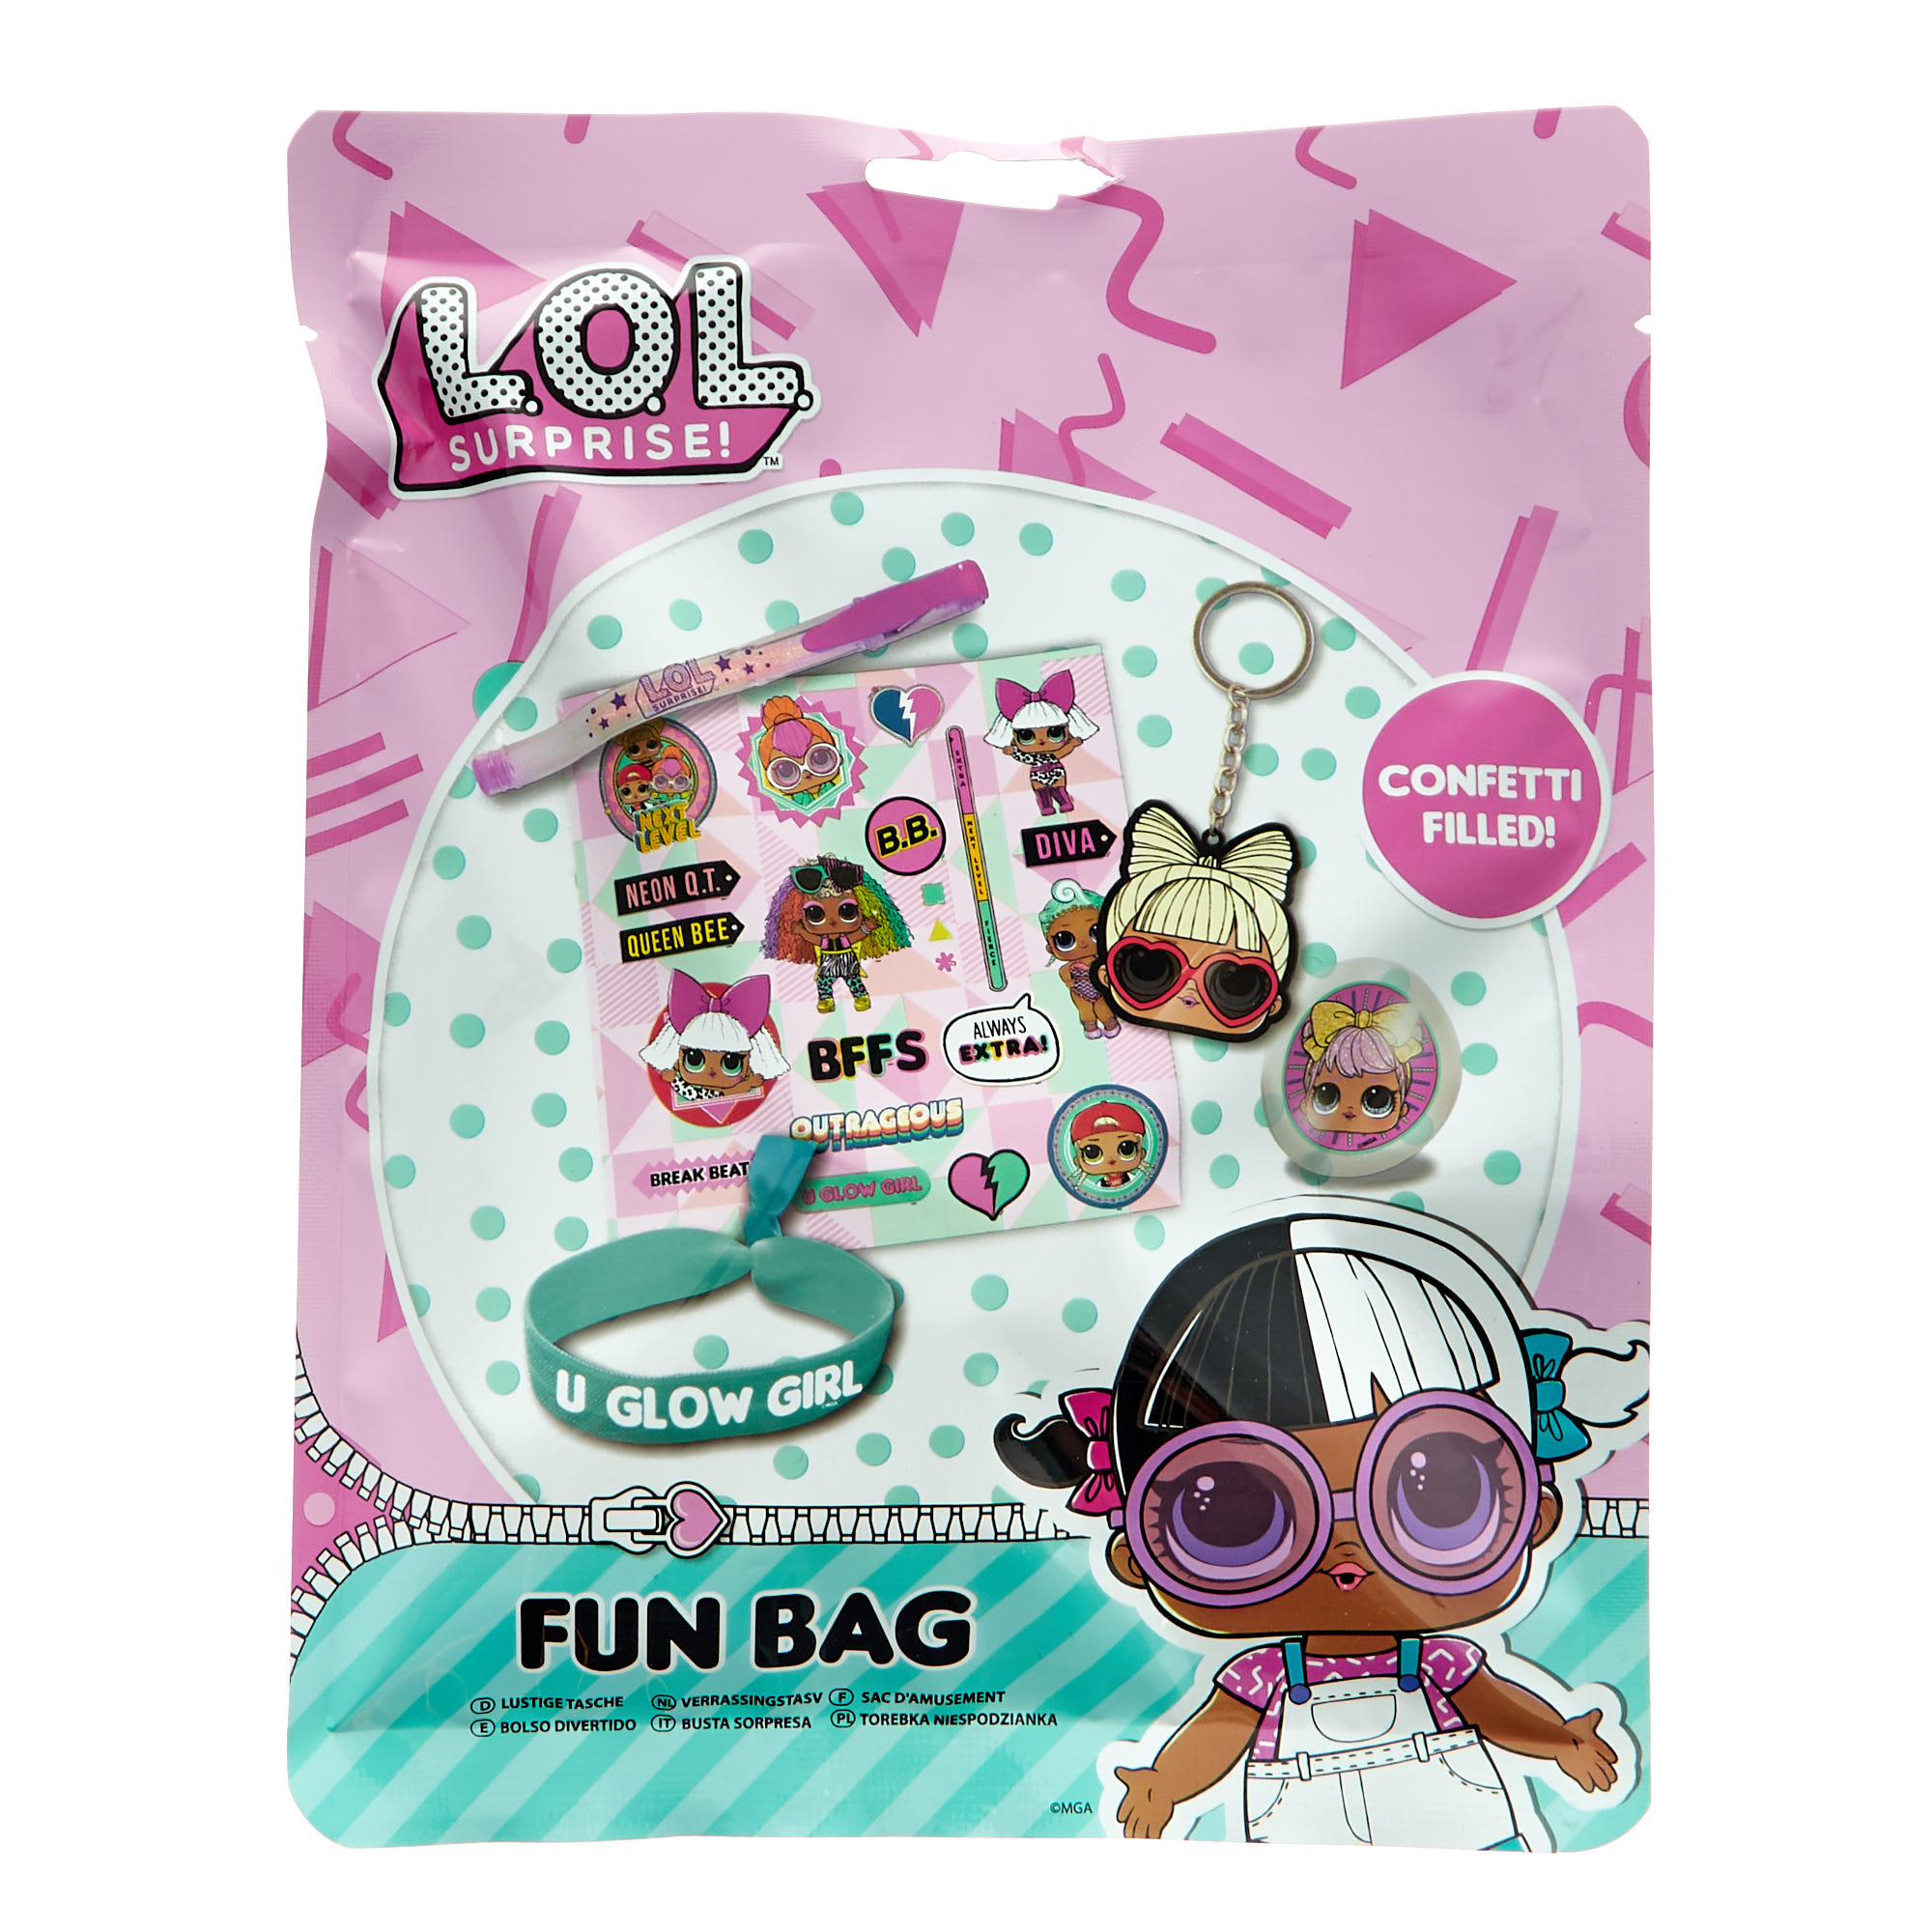 L.O.L. Surprise! Fun Bag